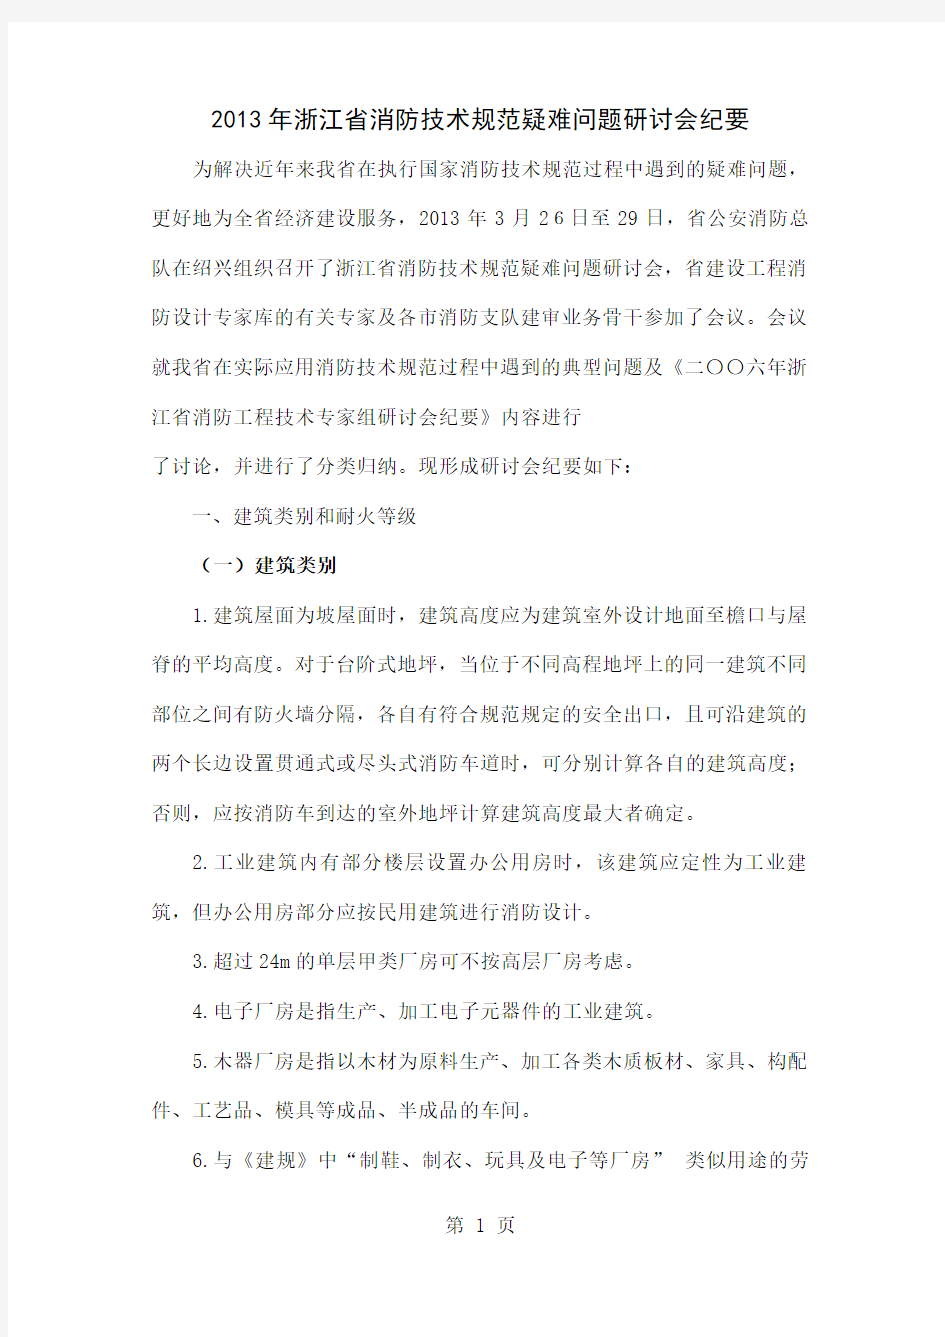 2019年浙江省消防技术规范疑难问题研讨会纪要正式稿共32页